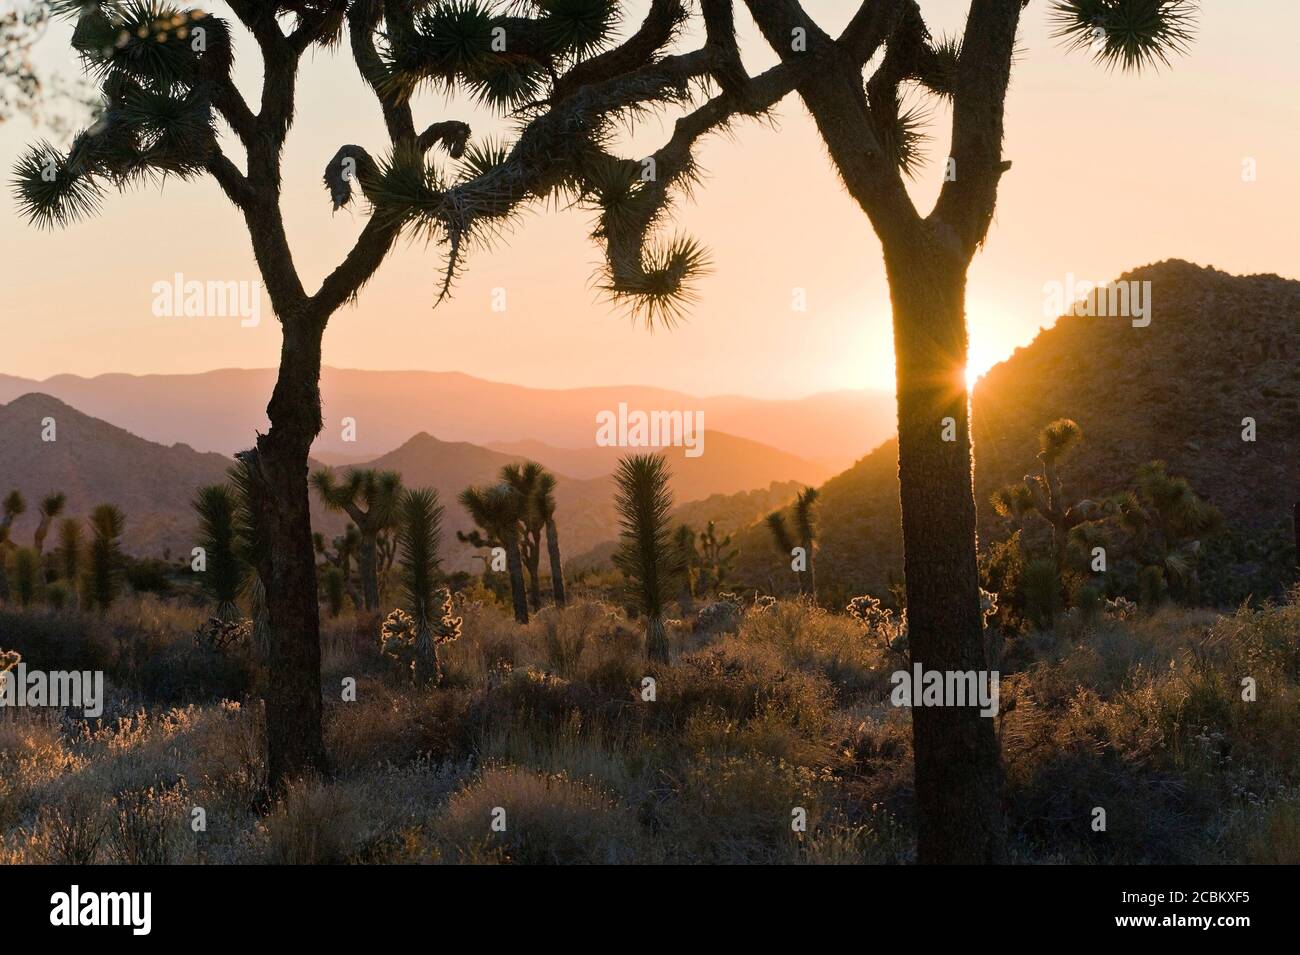 Joshua Tree National Park at dusk, California, USA Stock Photo